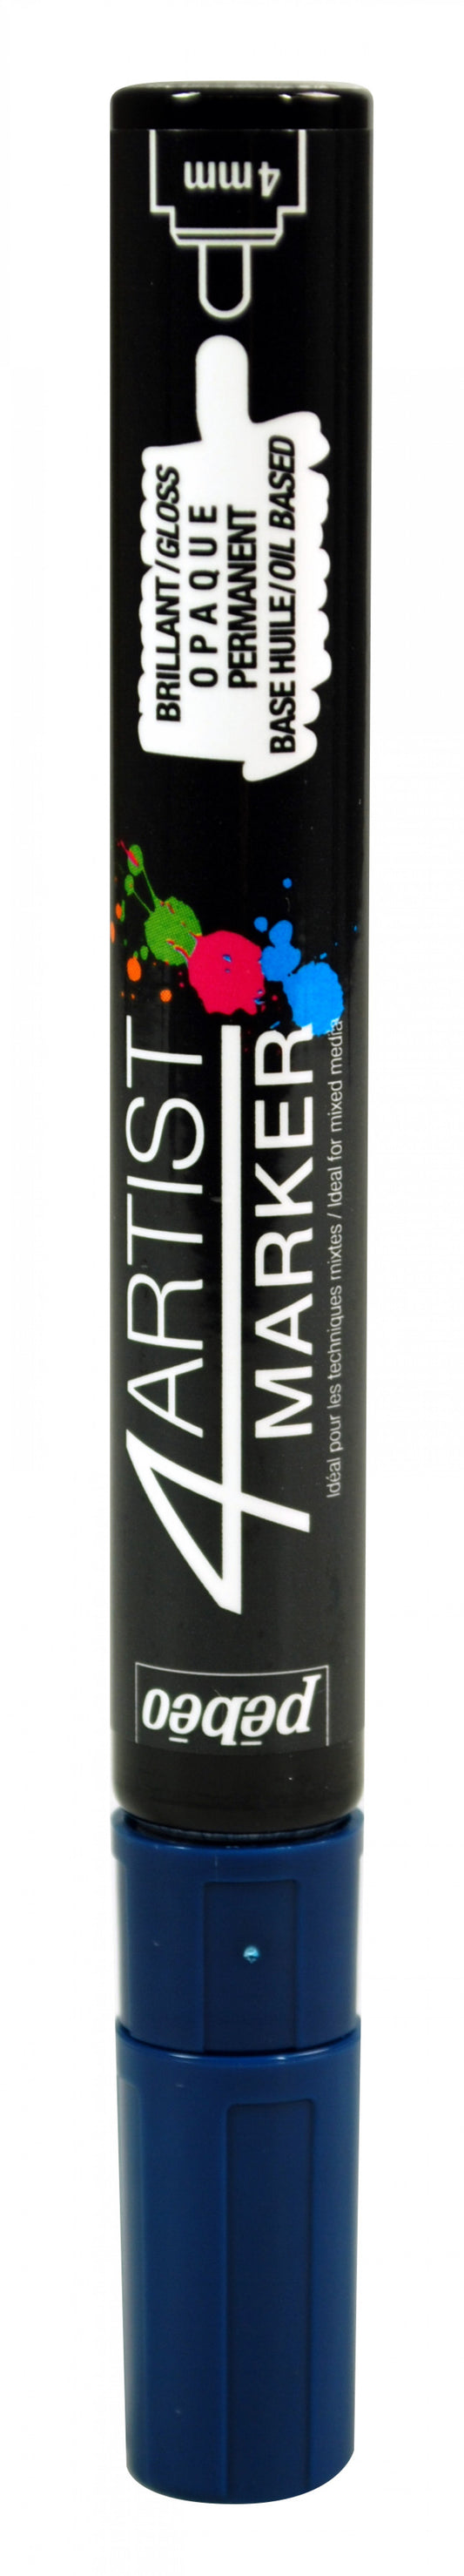 4Artist marker, 4mm tip, deep blue